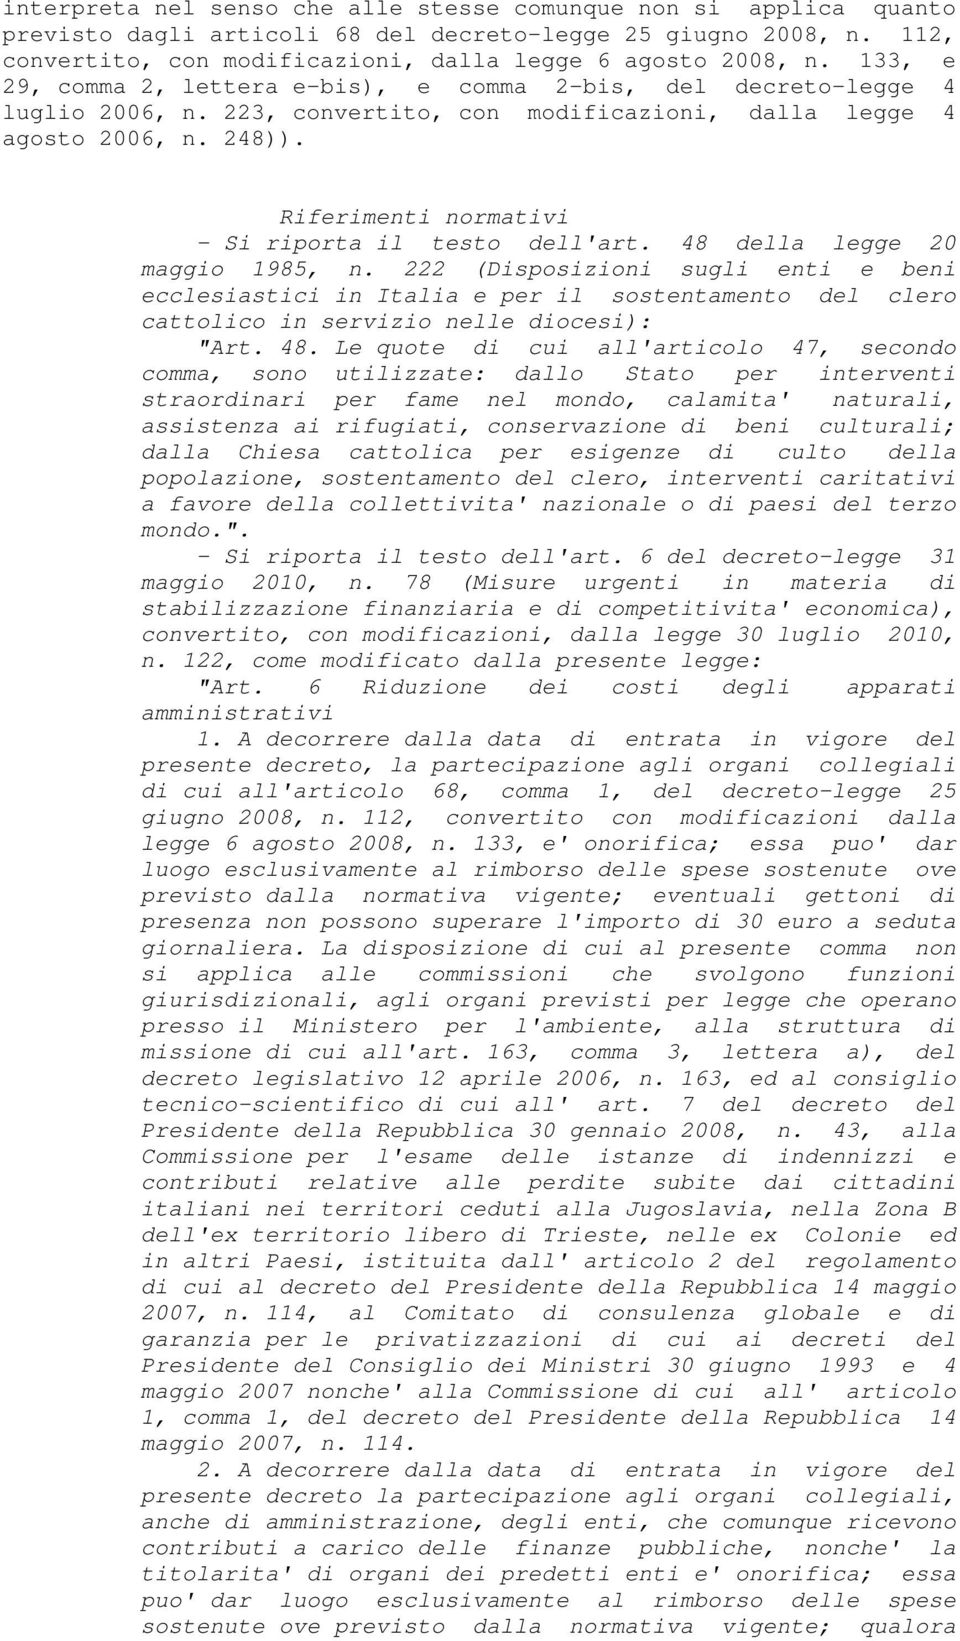 Riferimenti normativi - Si riporta il testo dell'art. 48 della legge 20 maggio 1985, n.